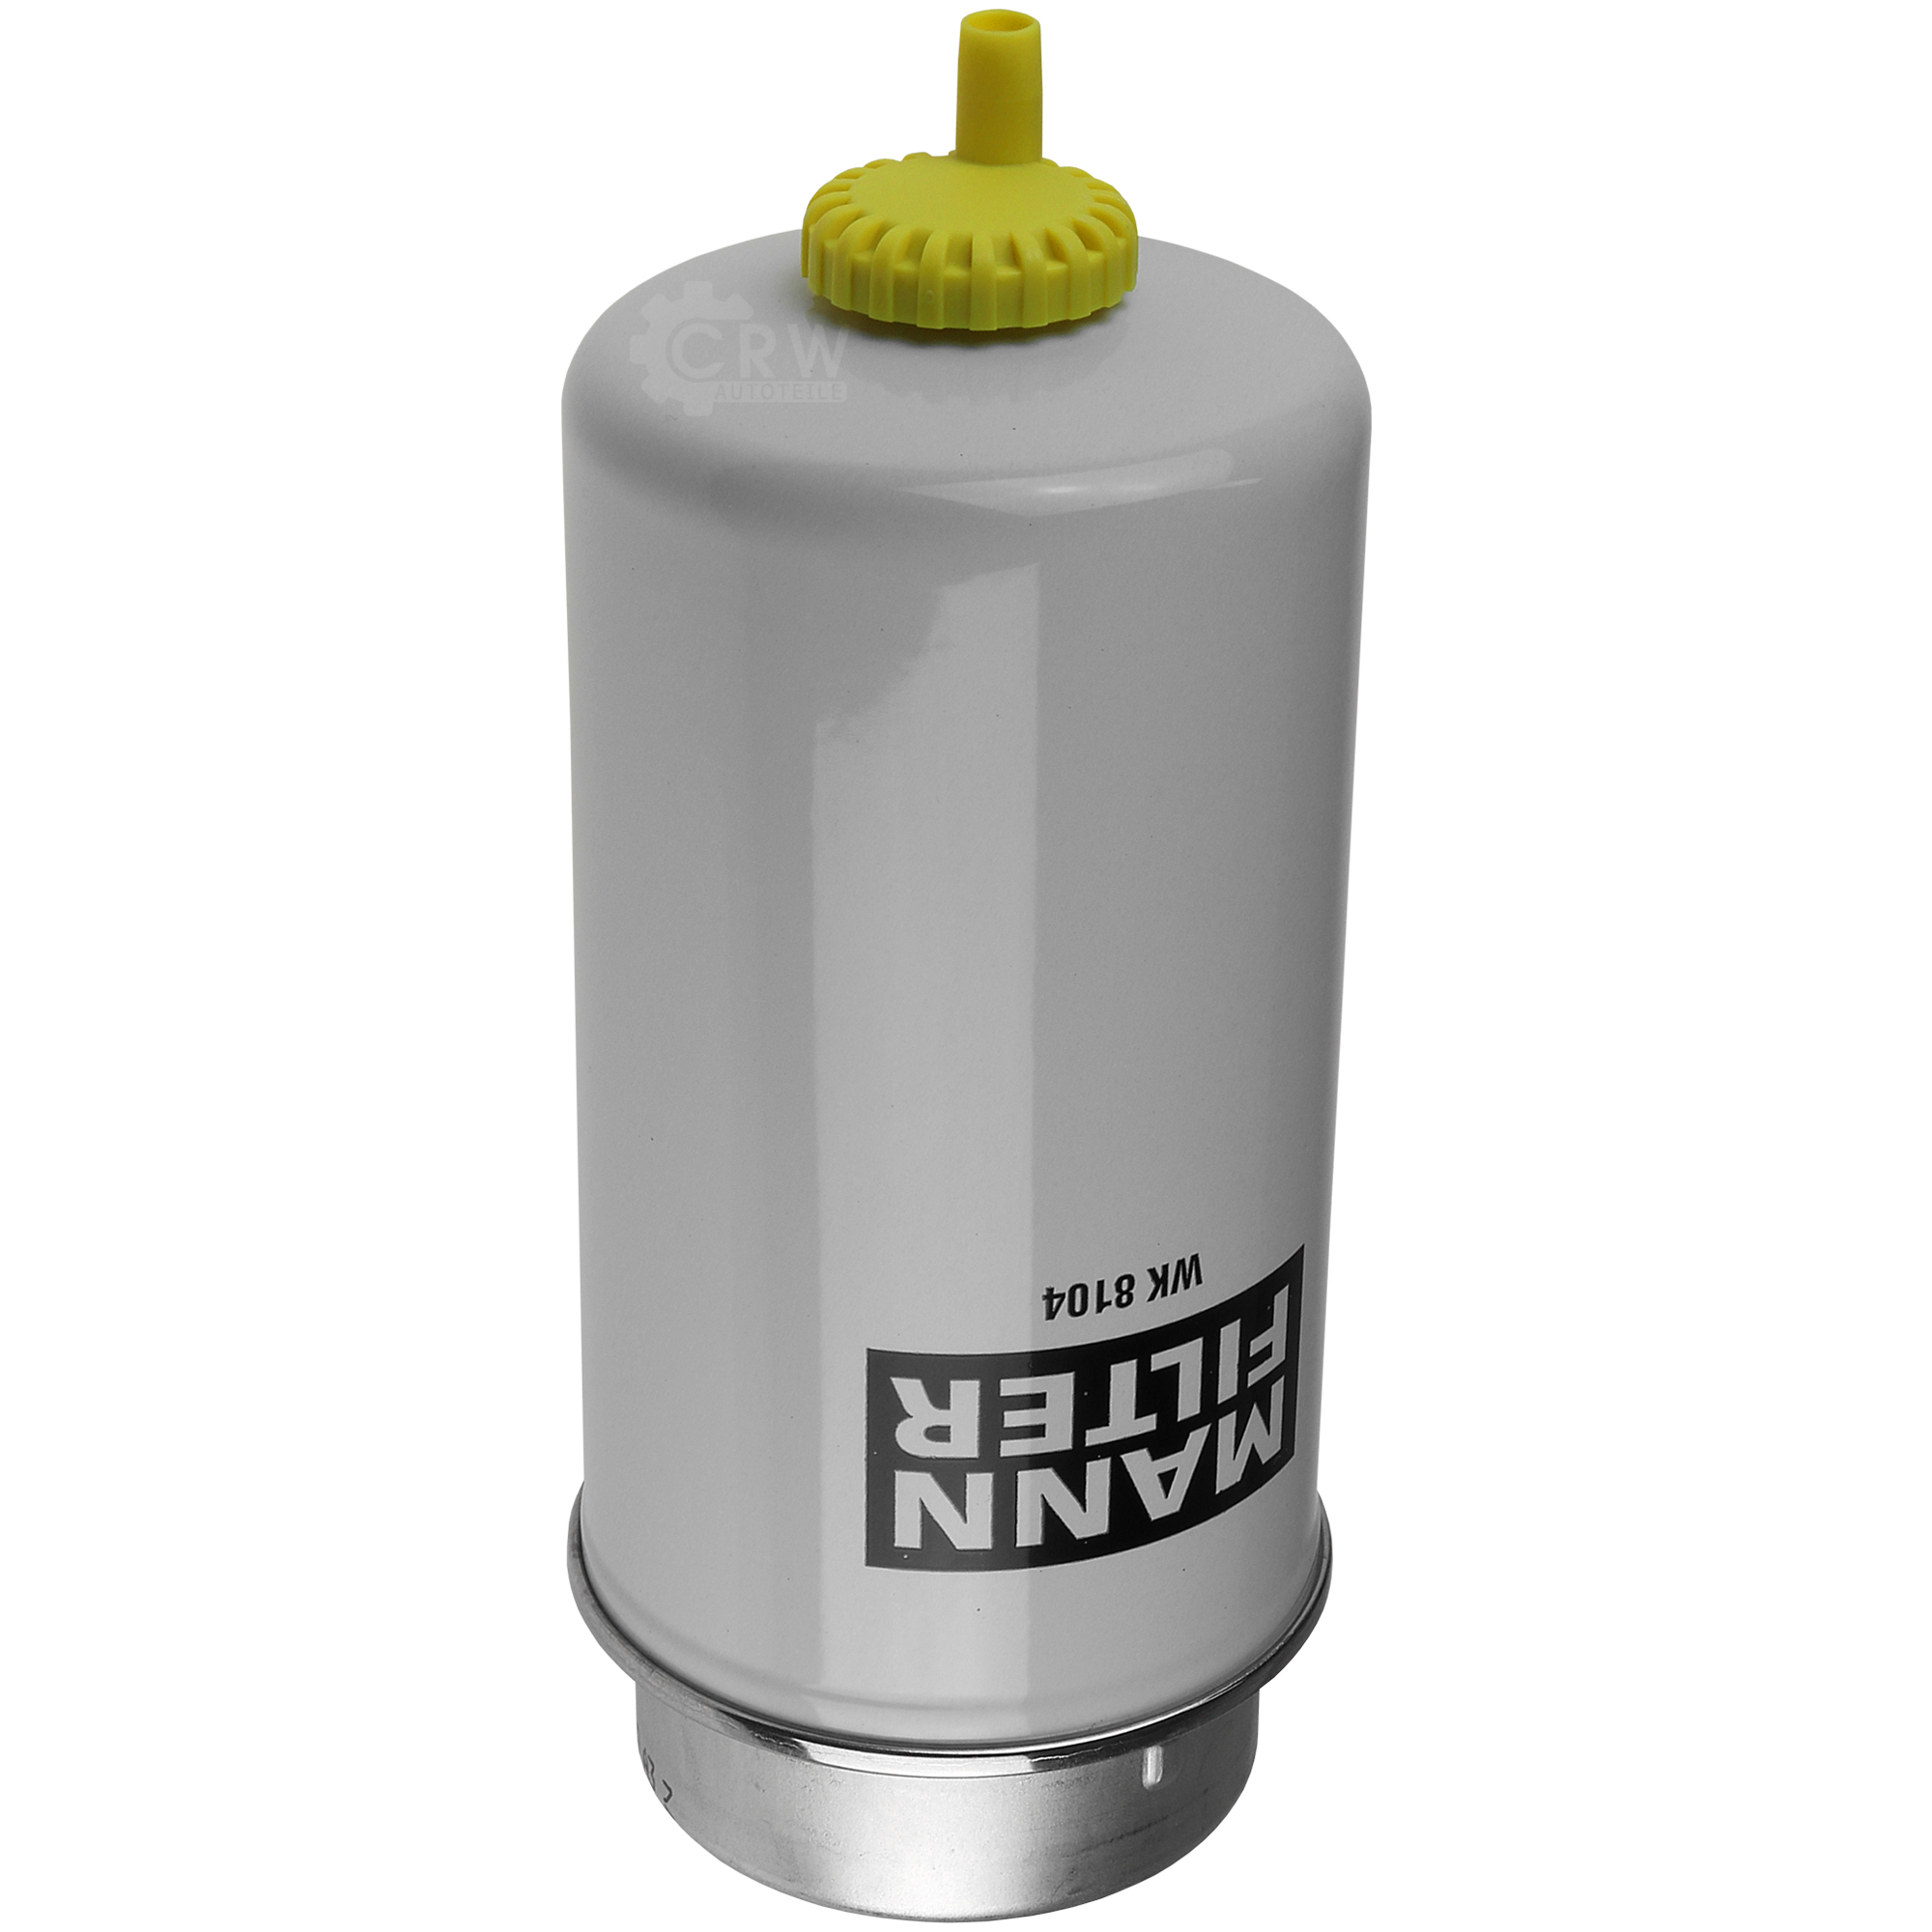 MANN-FILTER Kraftstofffilter WK 8104 Fuel Filter